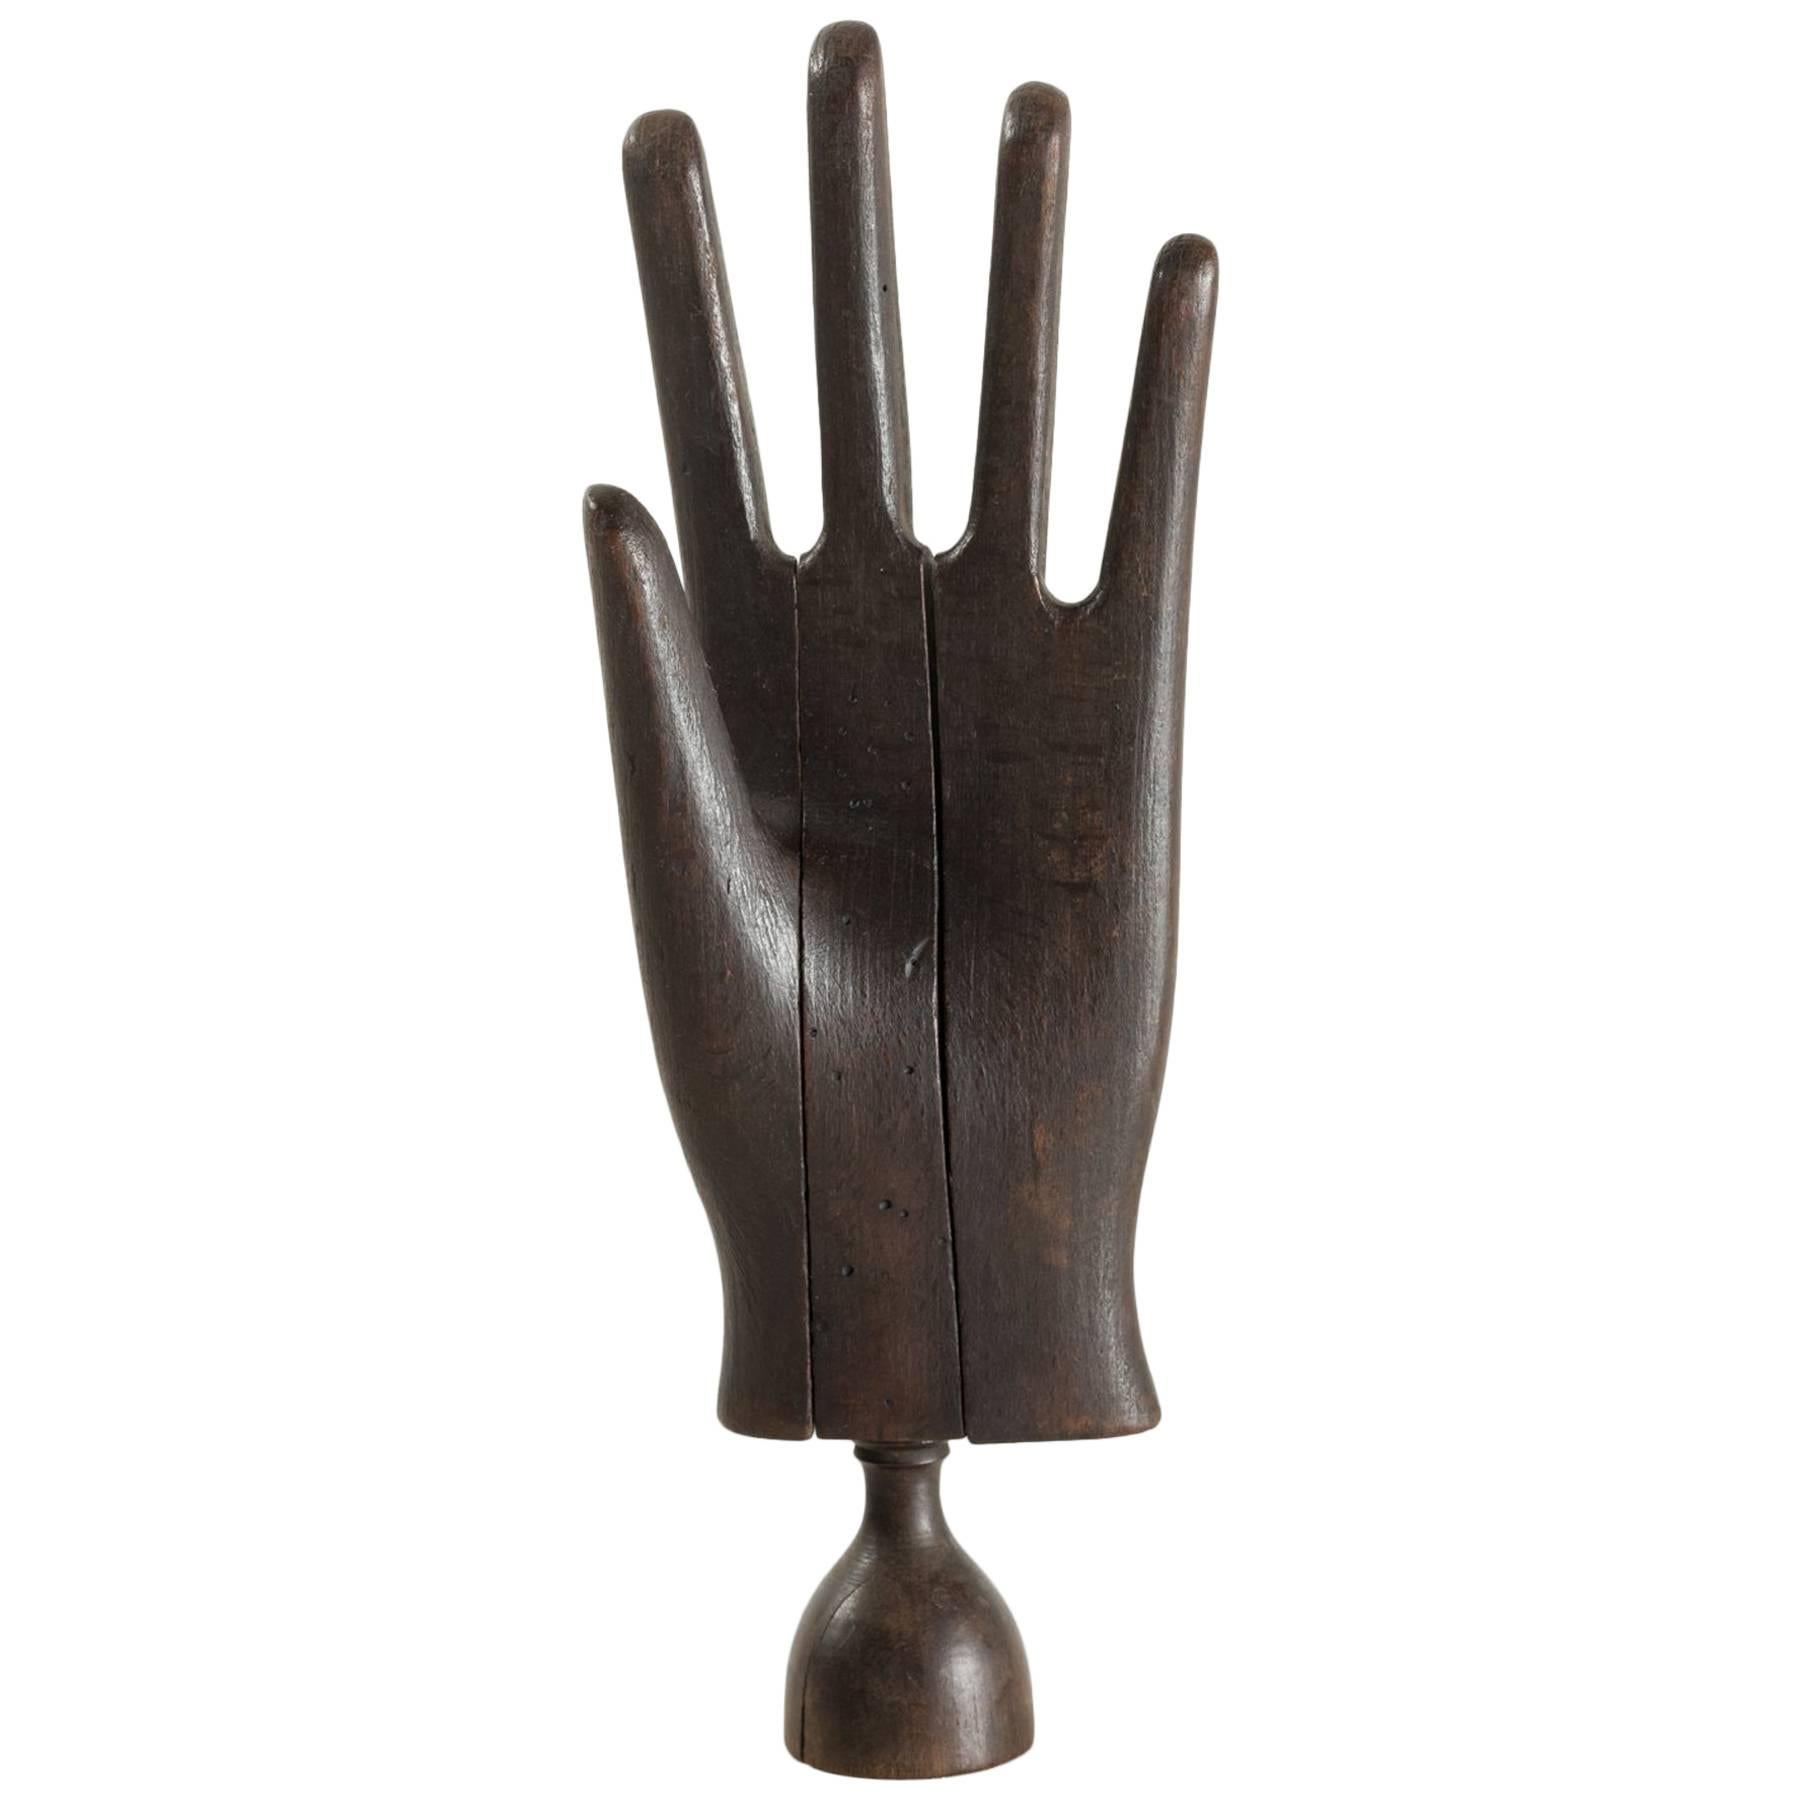 Wooden Glove Stretcher, circa 1890